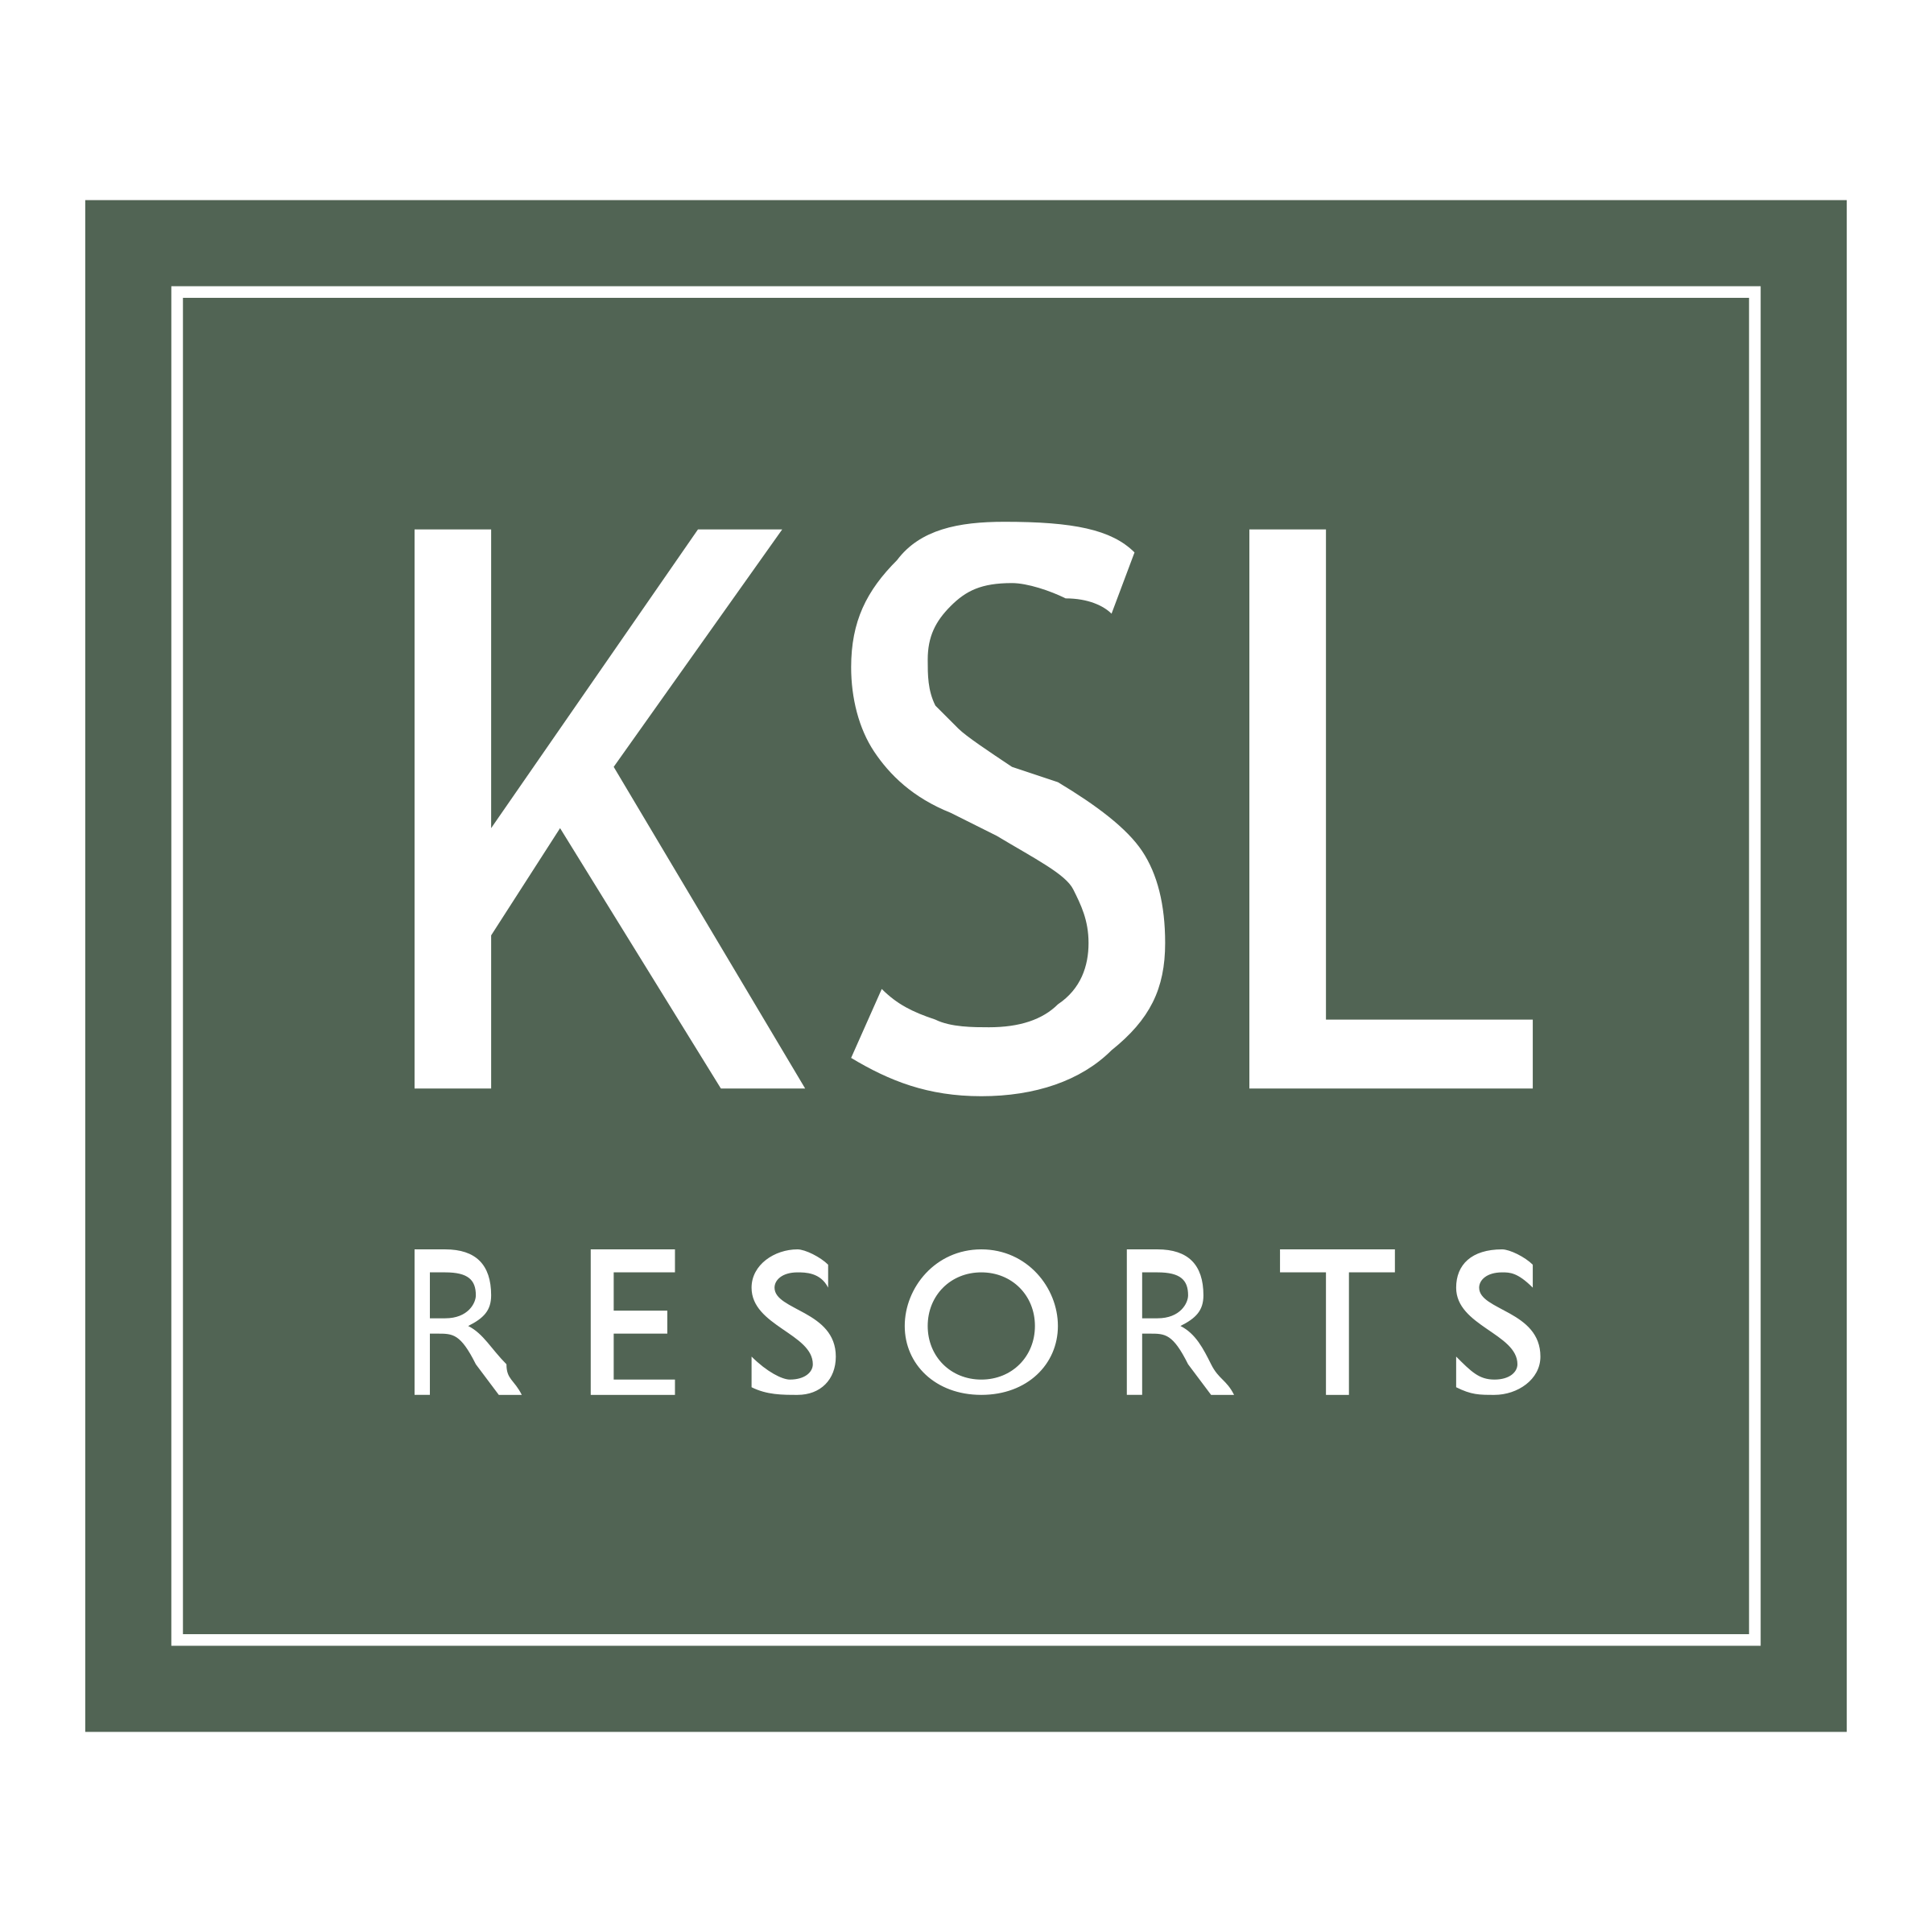 KSL Logo - KSL Resorts Logo PNG Transparent & SVG Vector - Freebie Supply